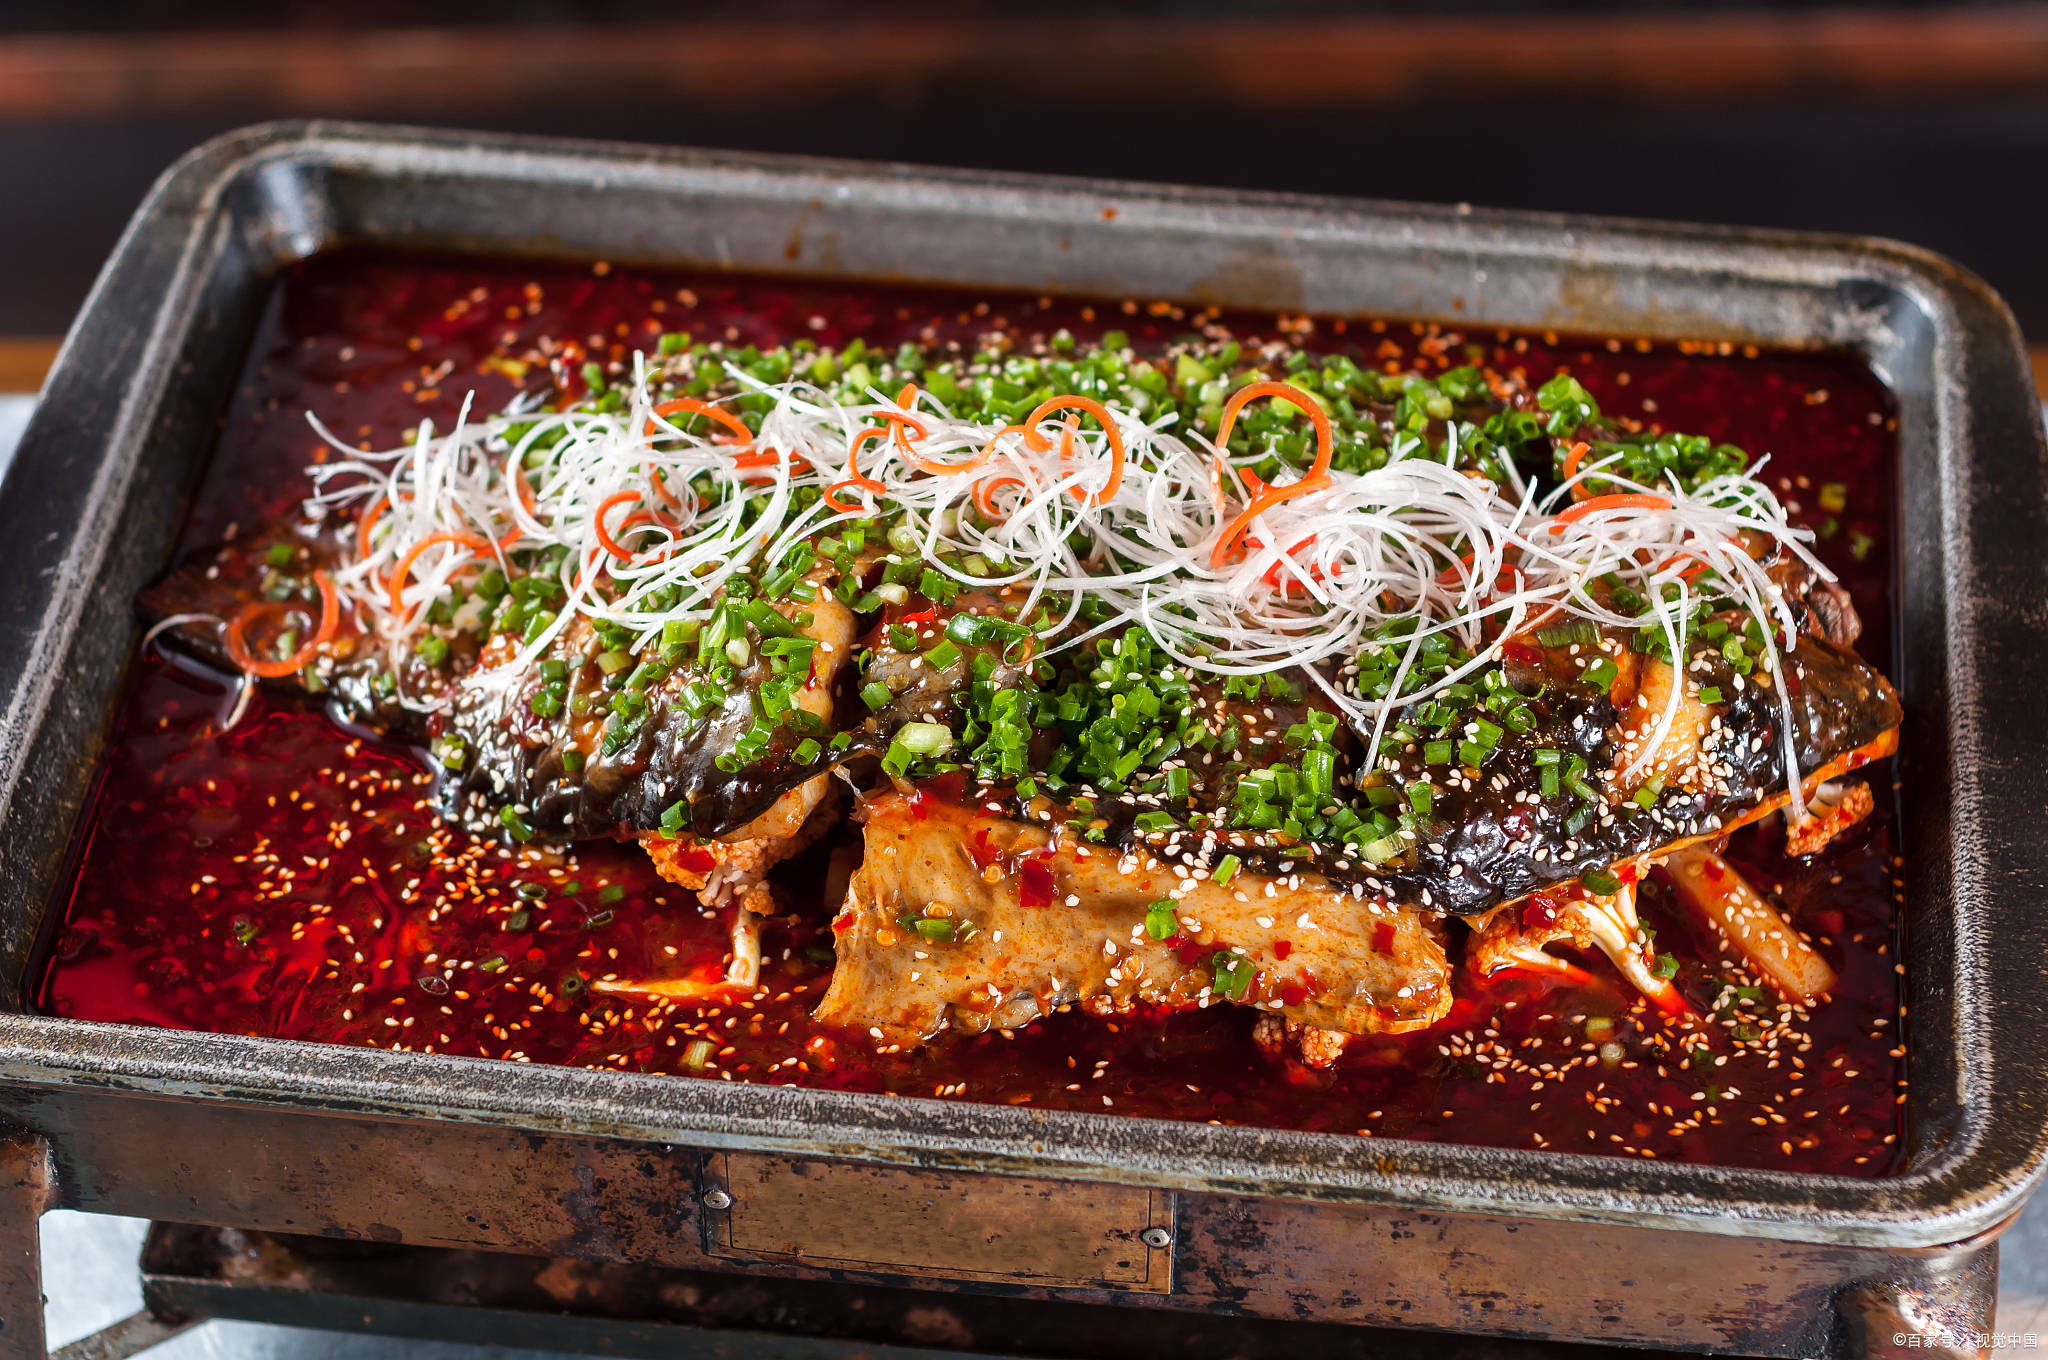 半天妖烤鱼:香辣孜然烤鱼,火辣鲜香的美味享受